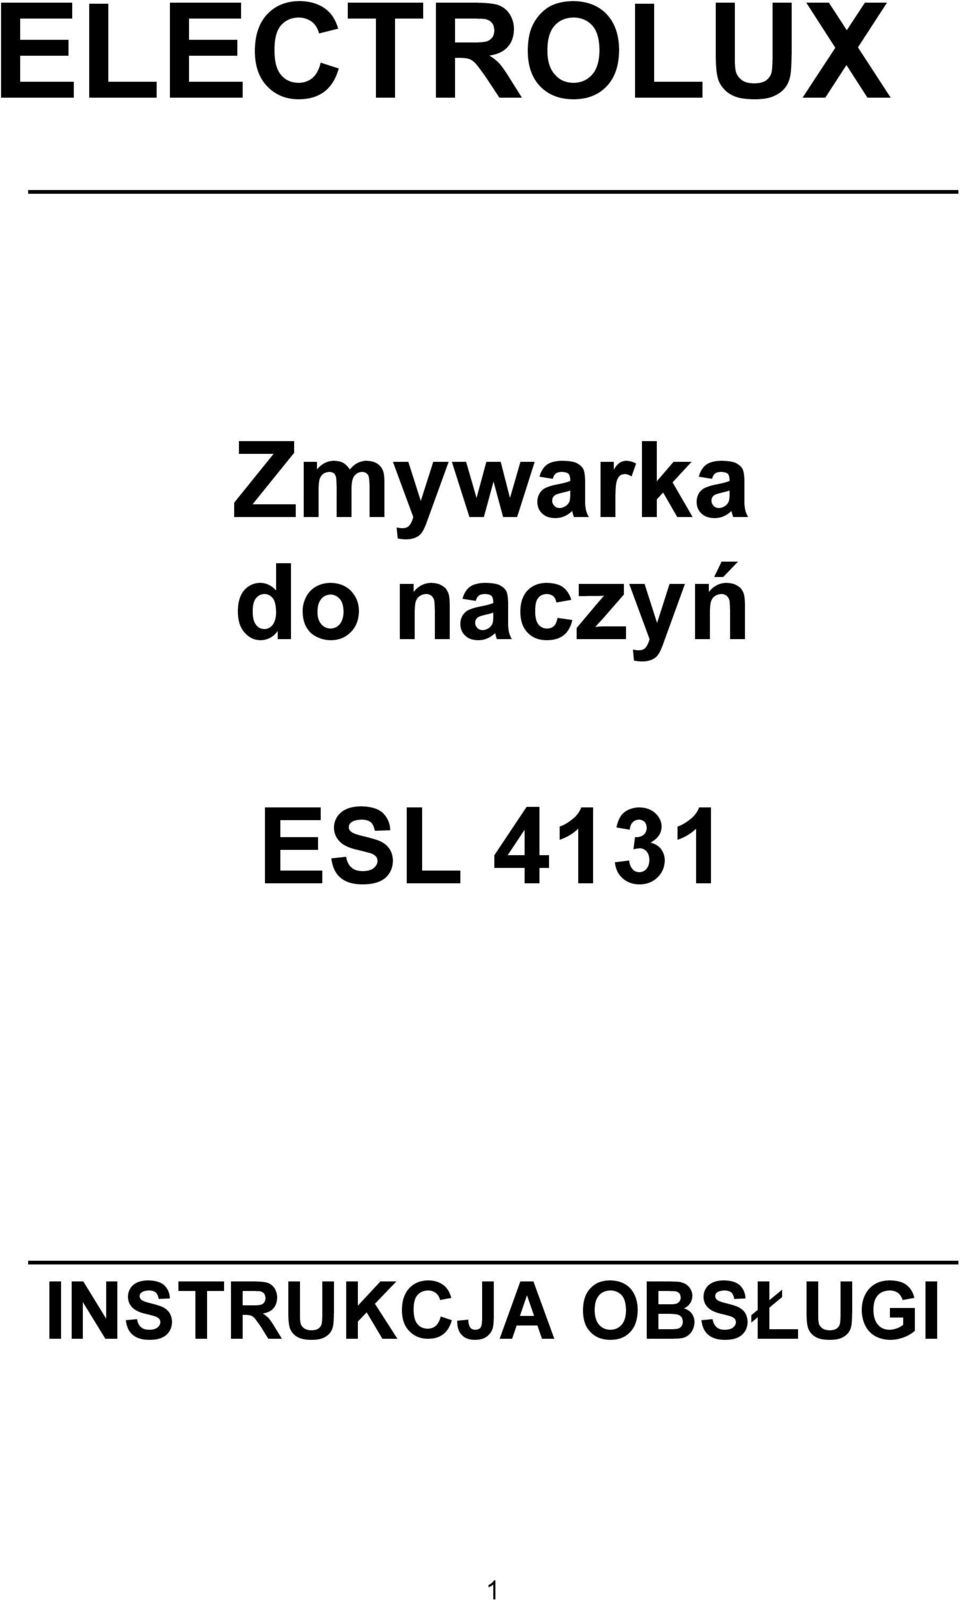 ELECTROLUX Zmywarka do naczy ESL 4131 INSTRUKCJA OBS!UGI - PDF Free Download